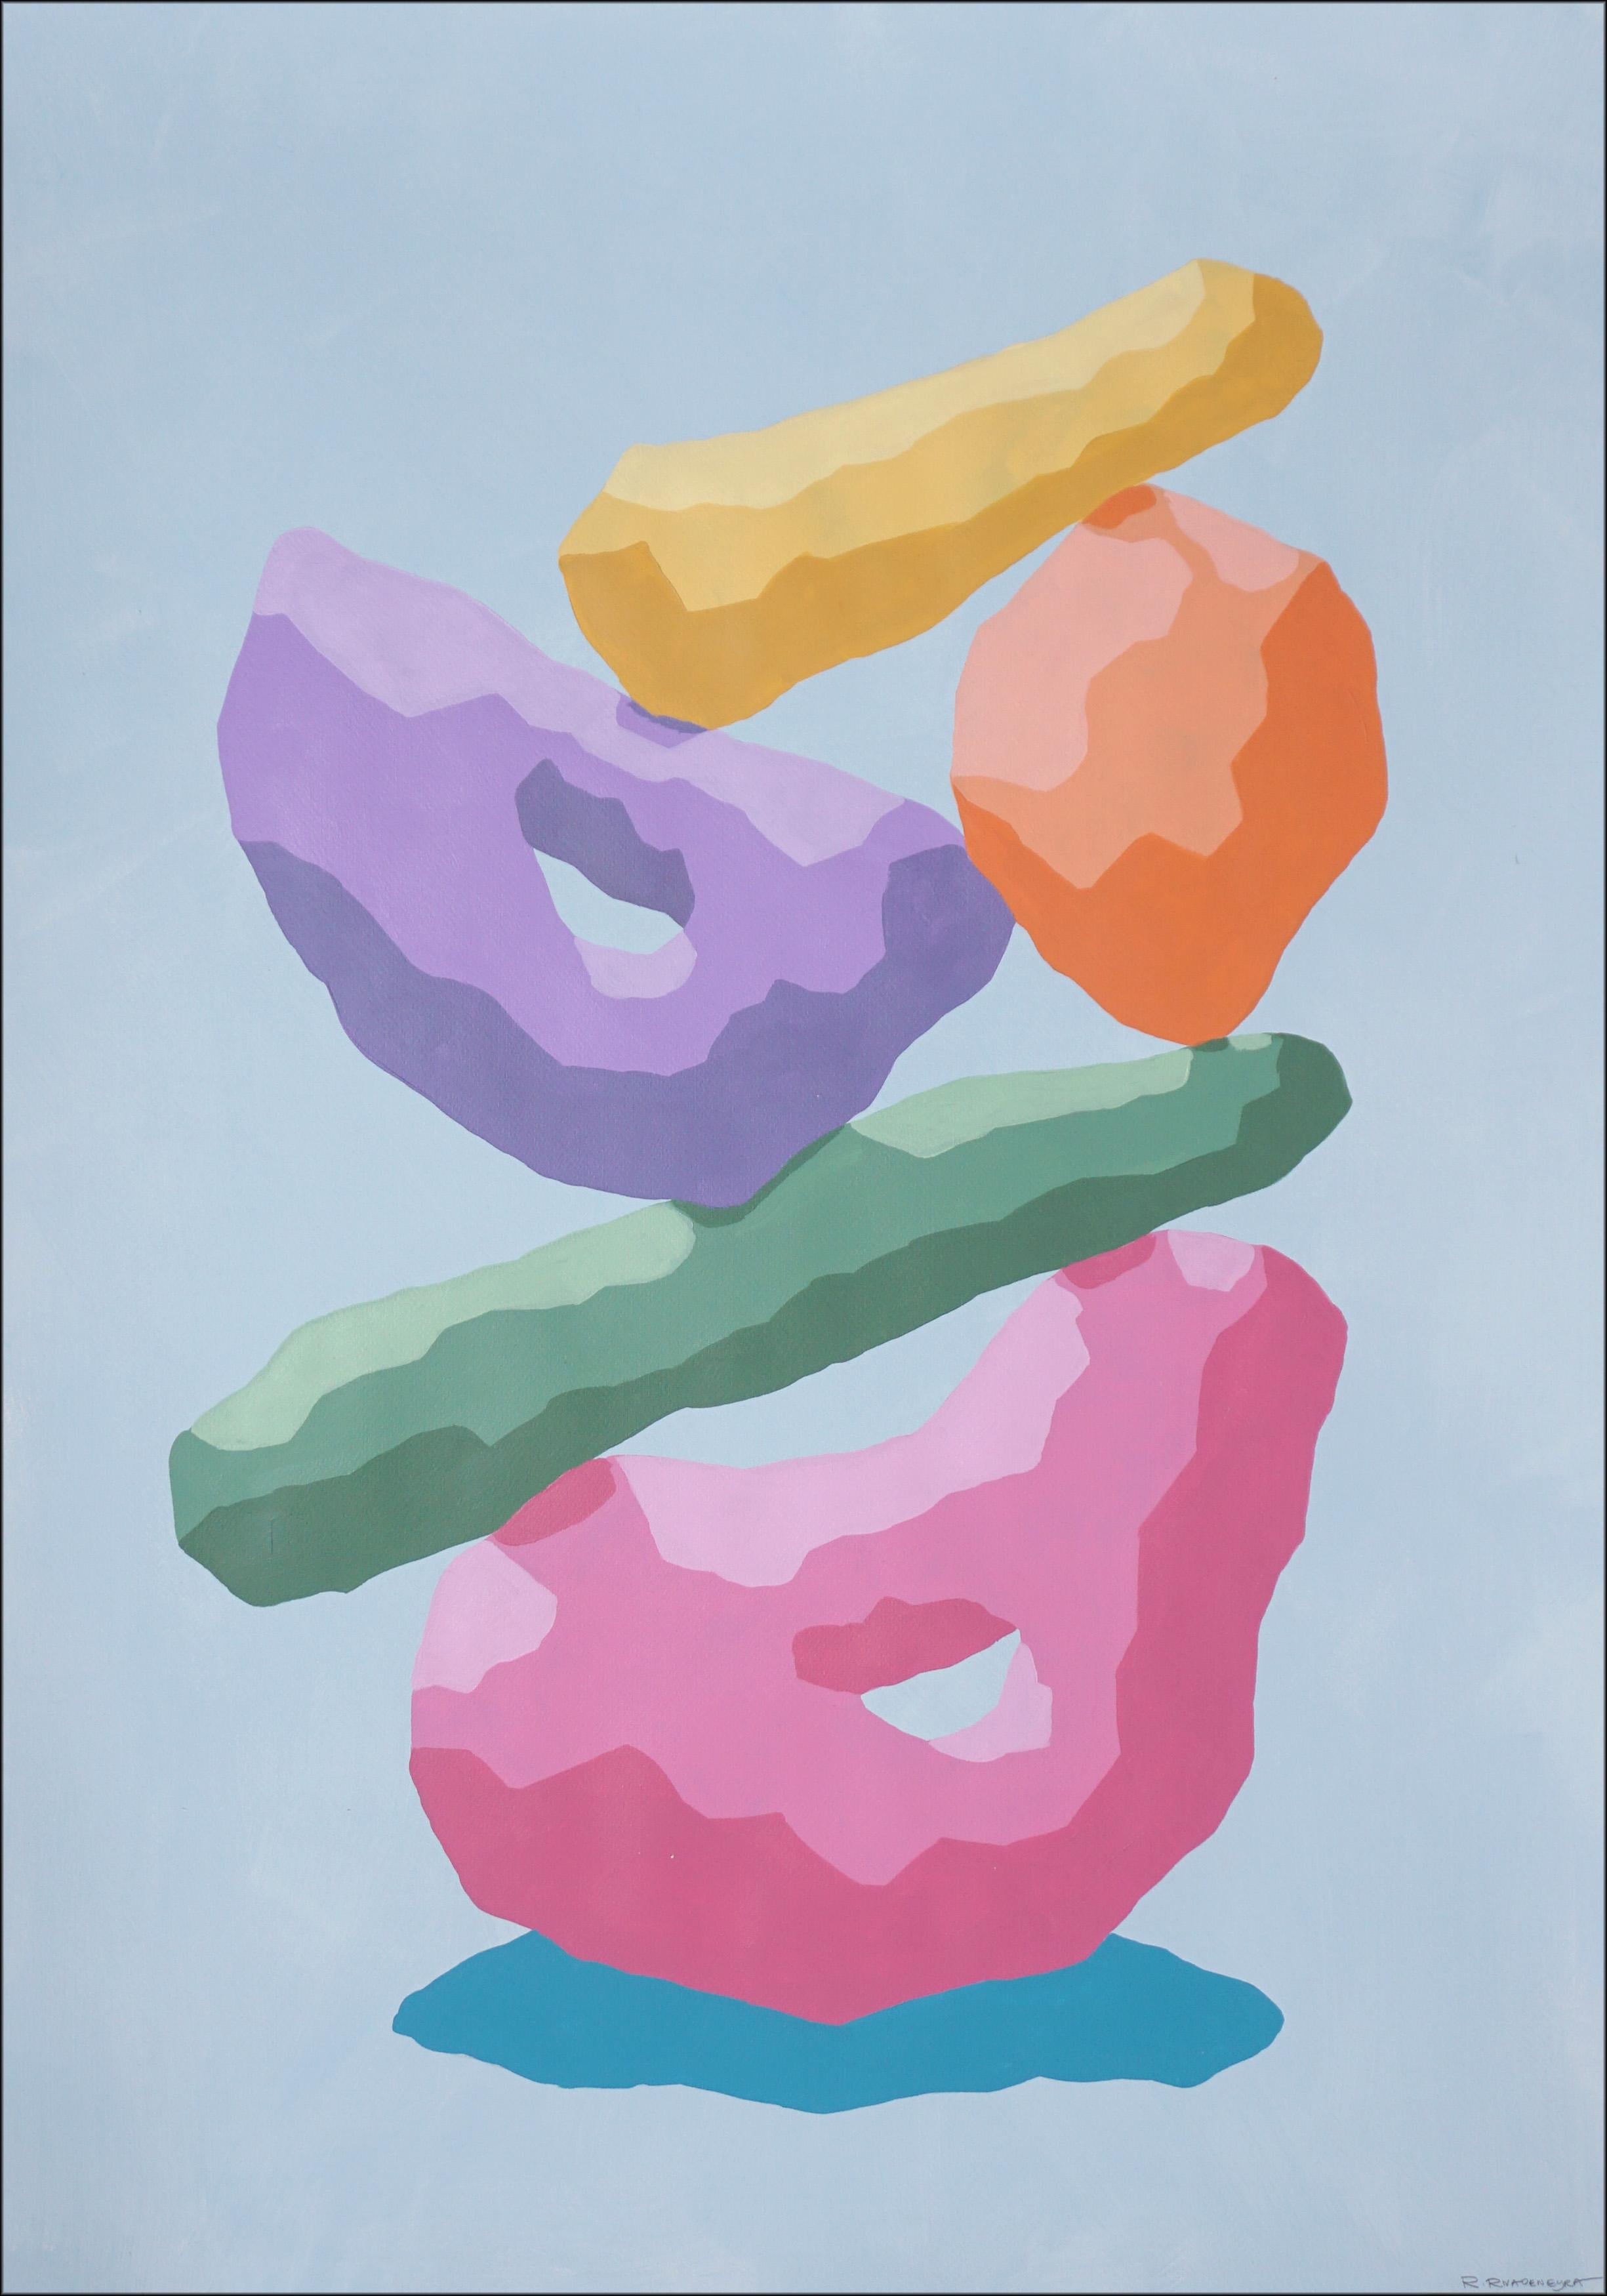 Ryan Rivadeneyra Abstract Painting – Regenbogen-Totem, Pastelltöne, Skulptur im 3D- Render-Stil, Rosa, Blau, Gelbtöne